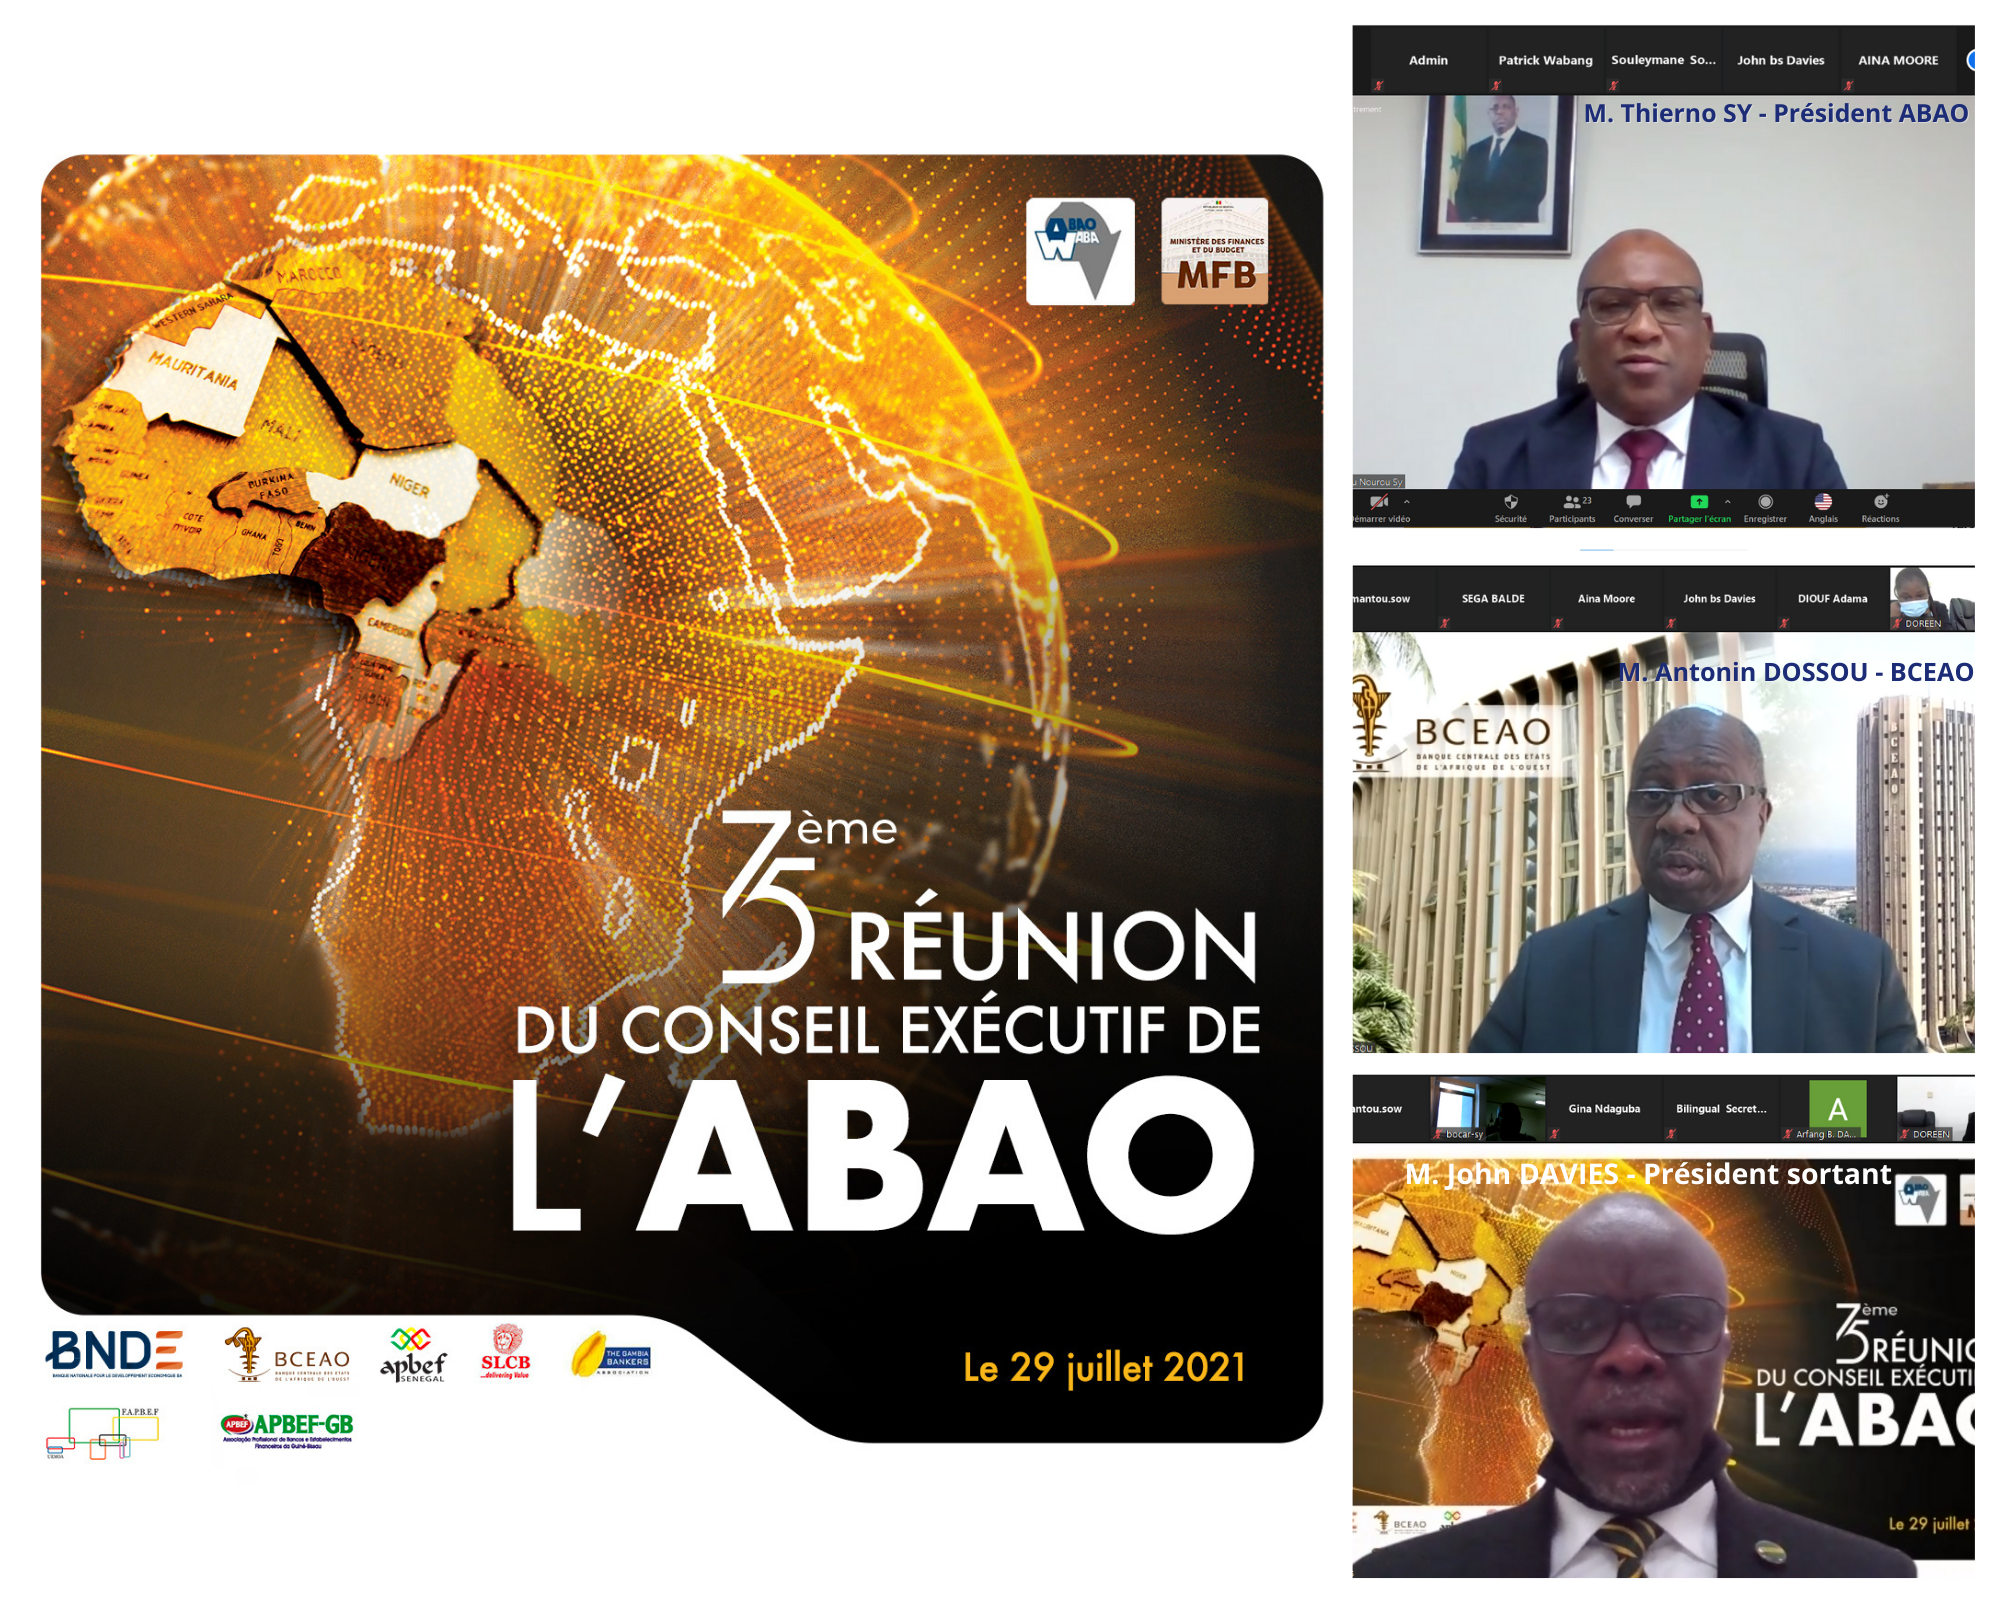 En haut, à droite, Thierno seydou Nourou Sy, nouveau président de l'ABAO.